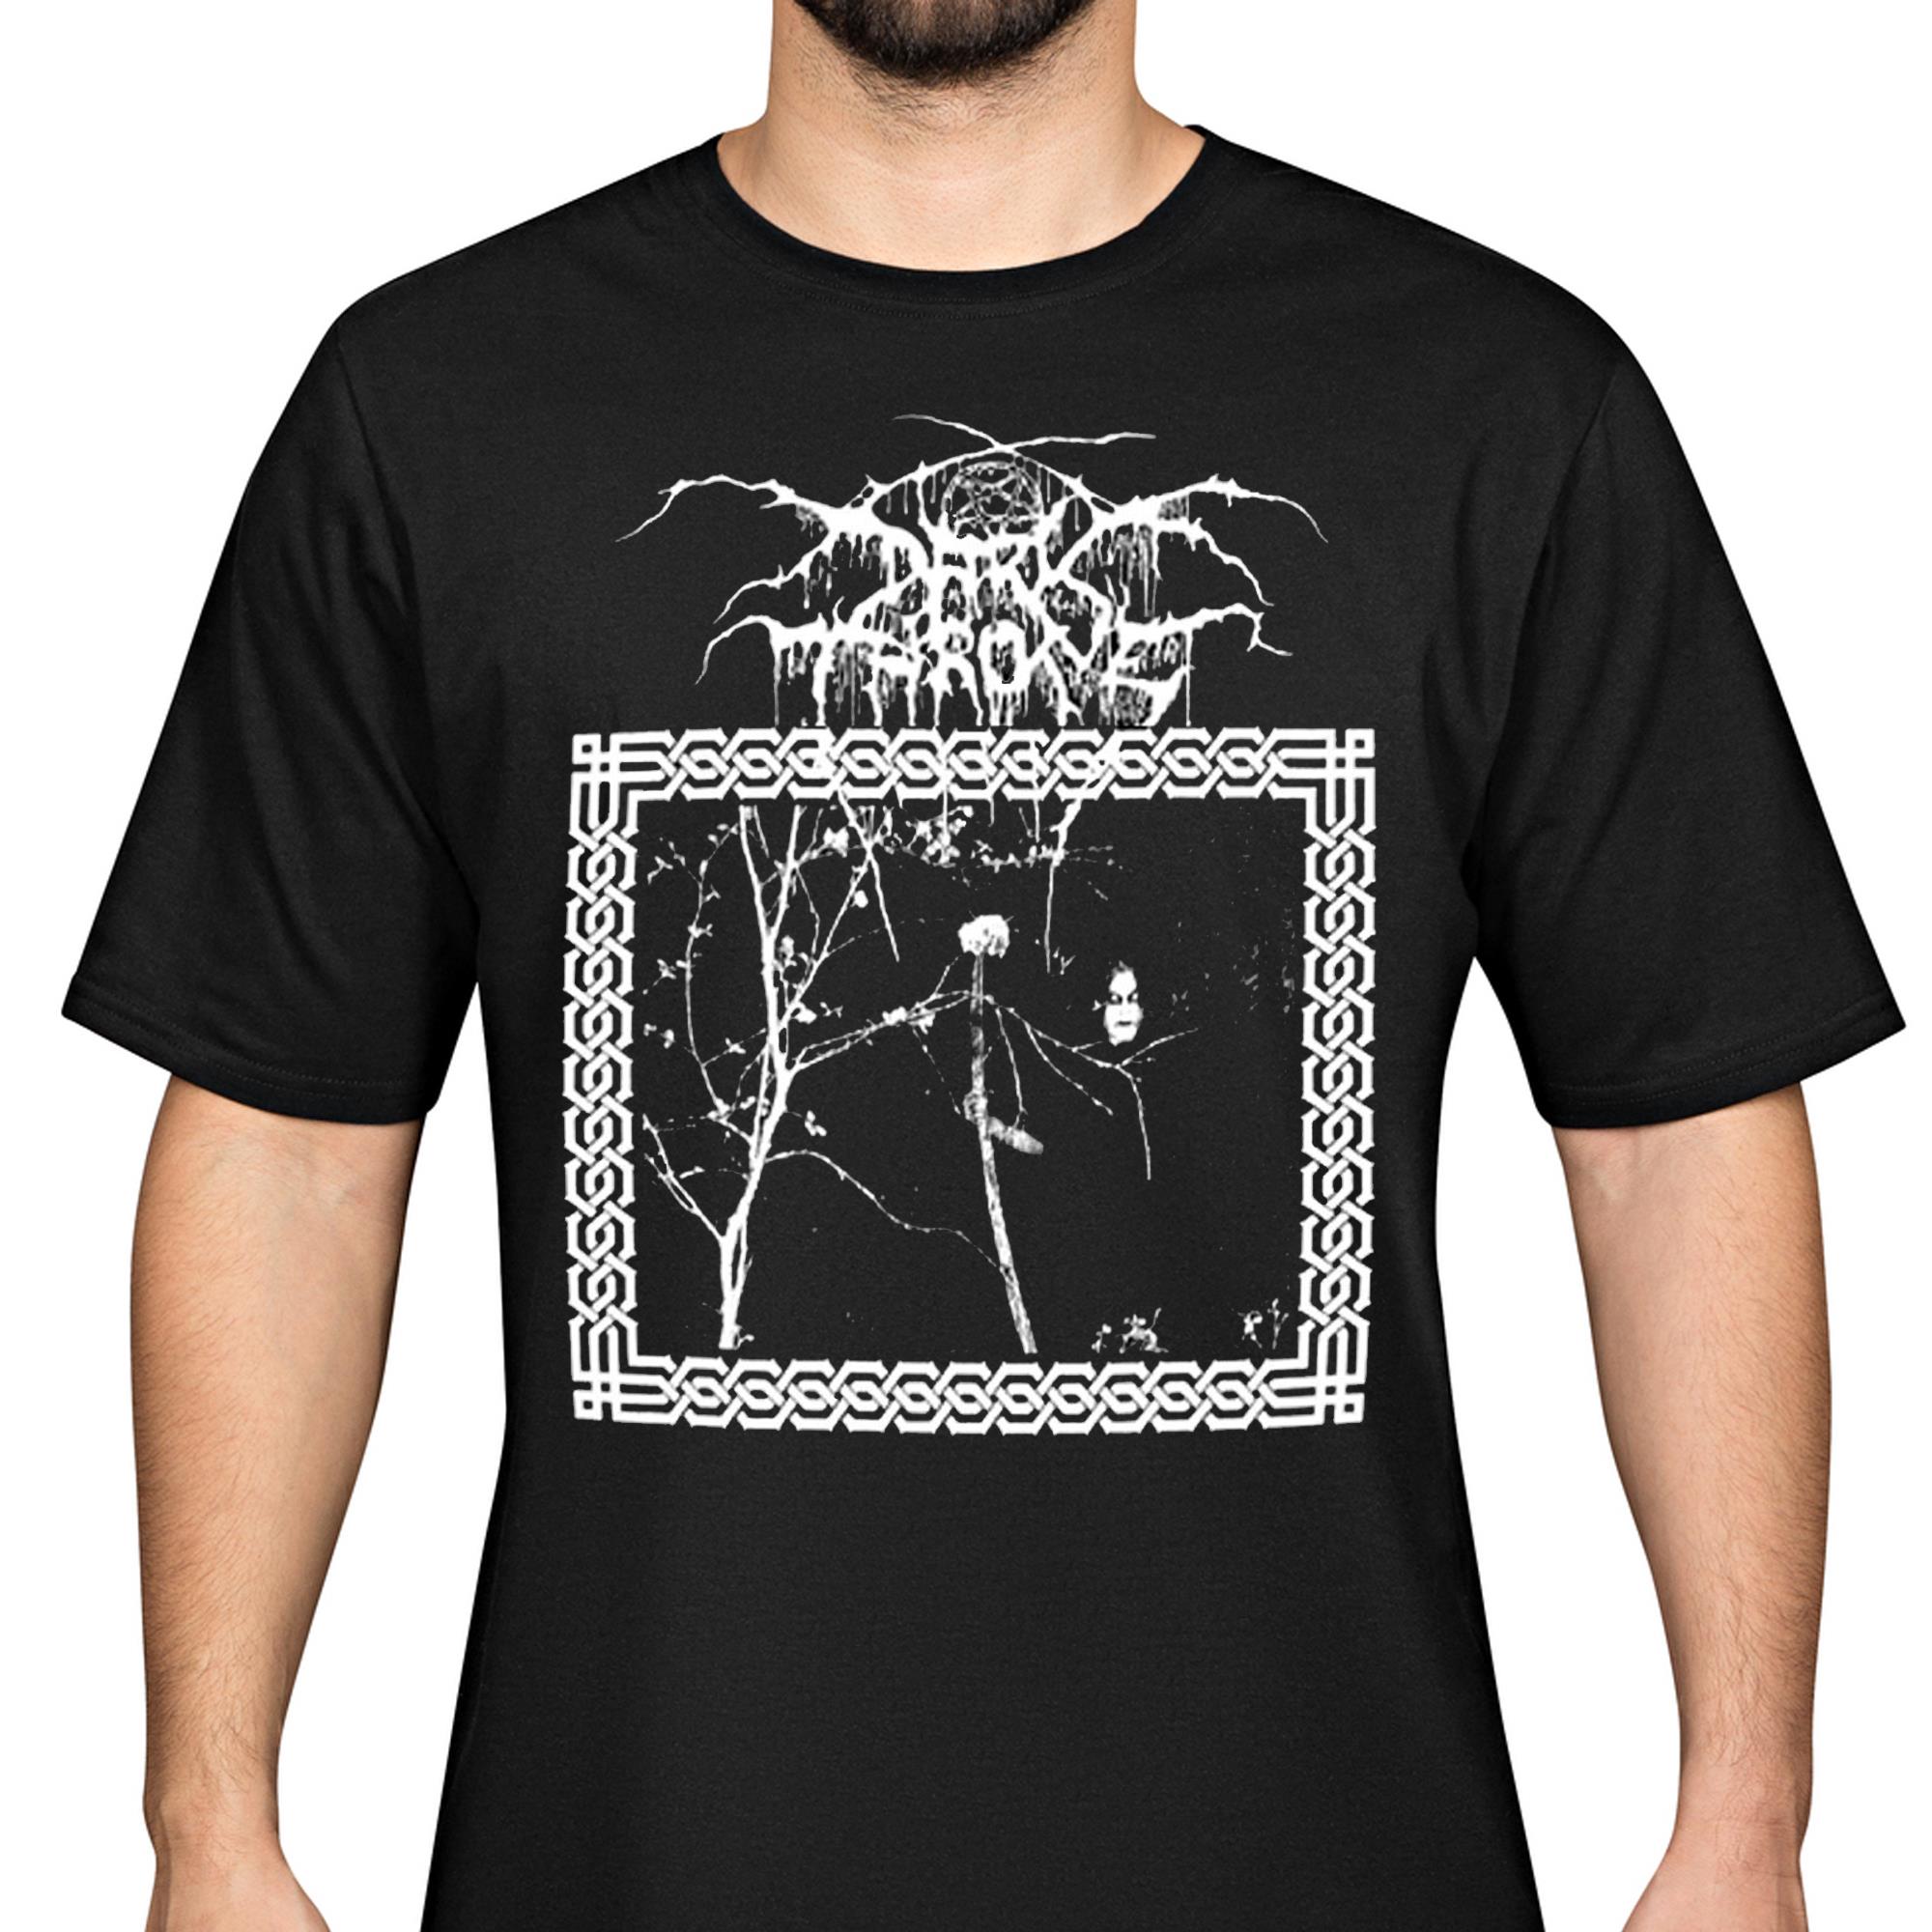 A Funeral Moon T-Shirt